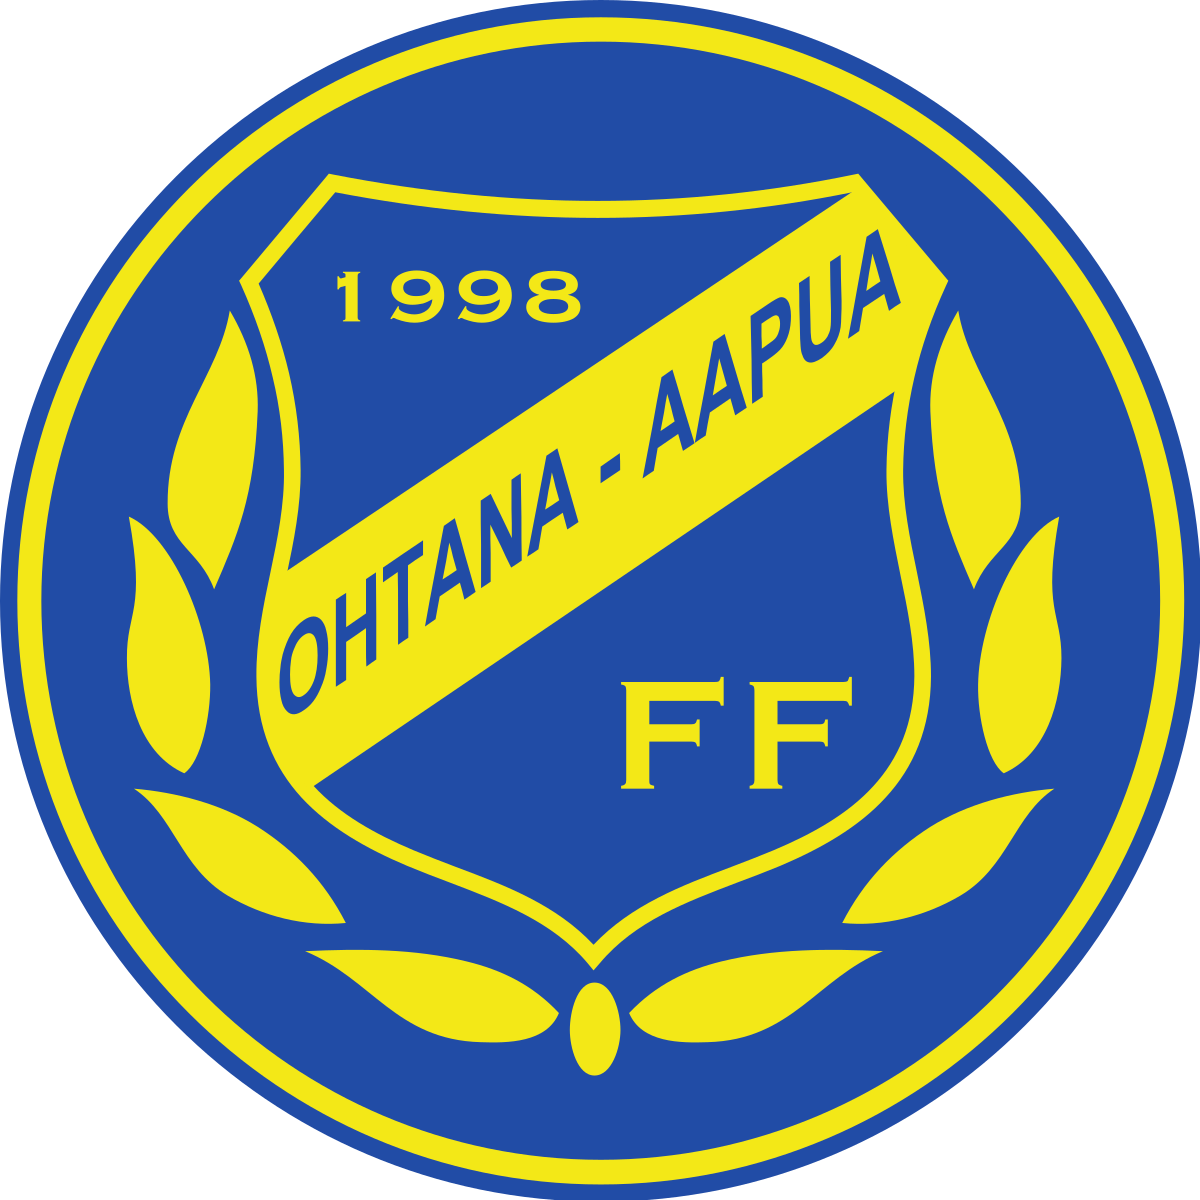 Ohtana/ Aapua FF